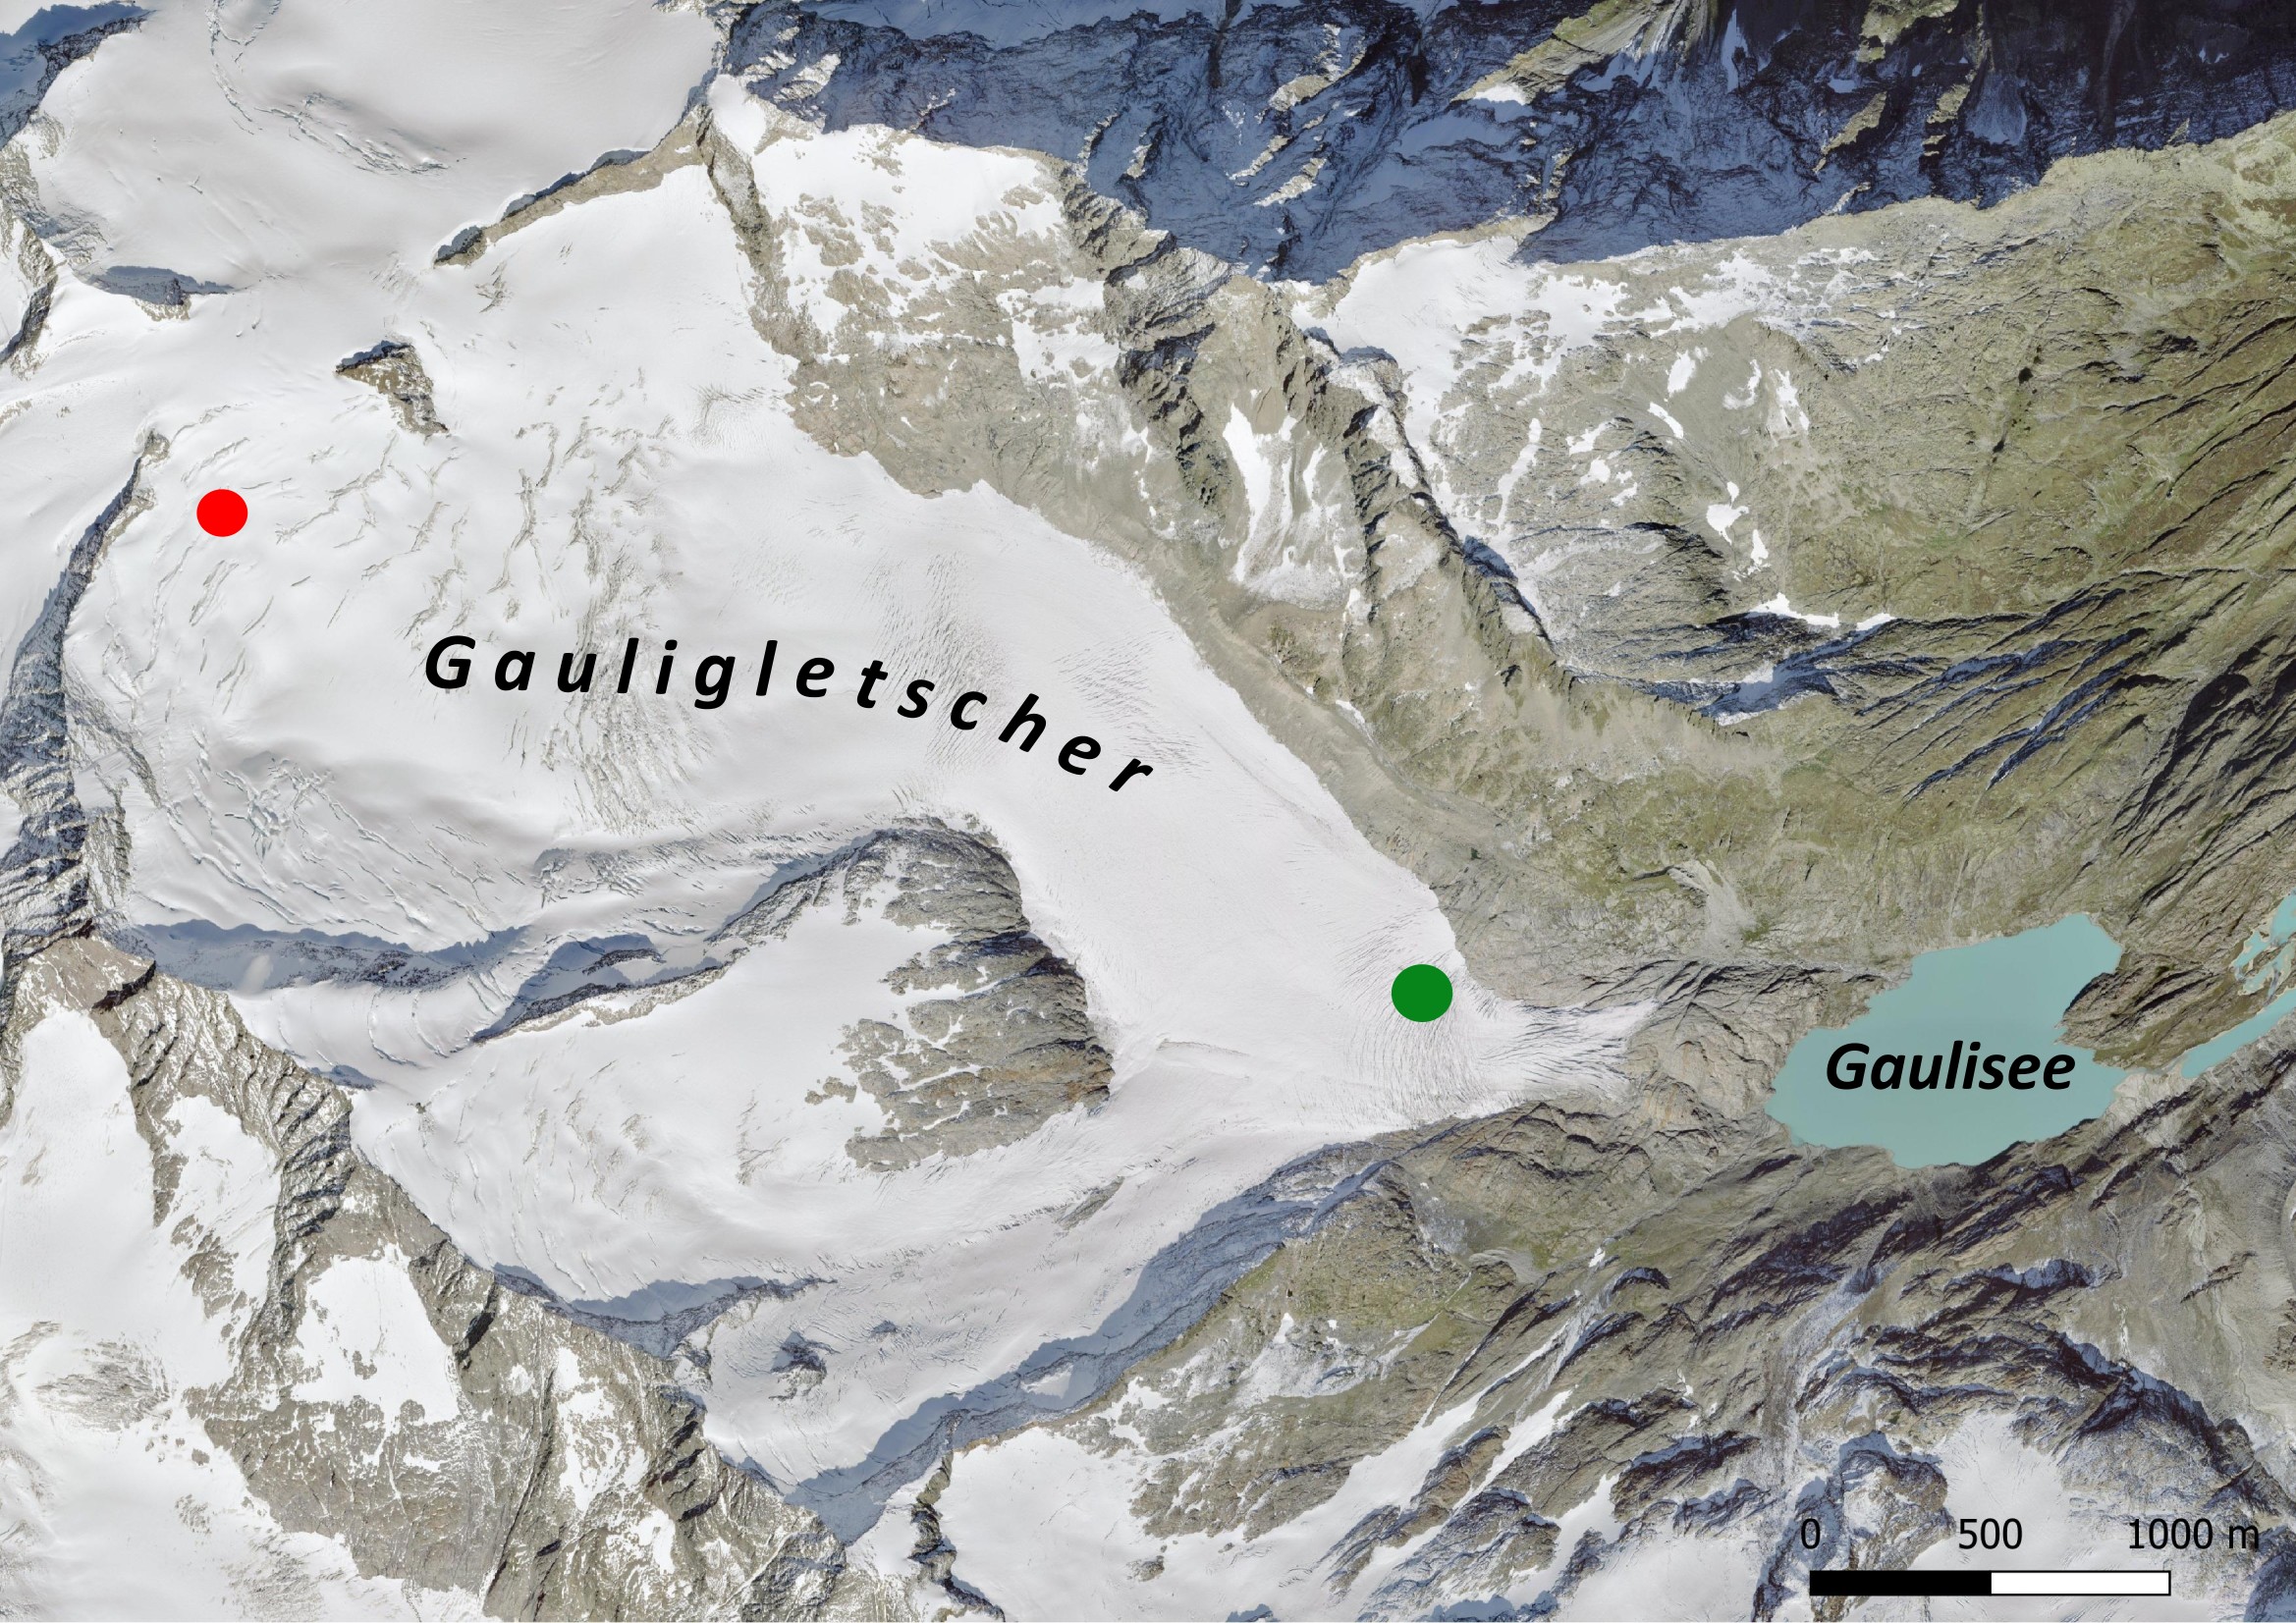 Luchtfoto van de Gauligletscher in 2021. De rode stip markeert de plek waar het vliegtuig is neergestort, de groene waar de brokstukken in 2012-2018 zijn gevonden.